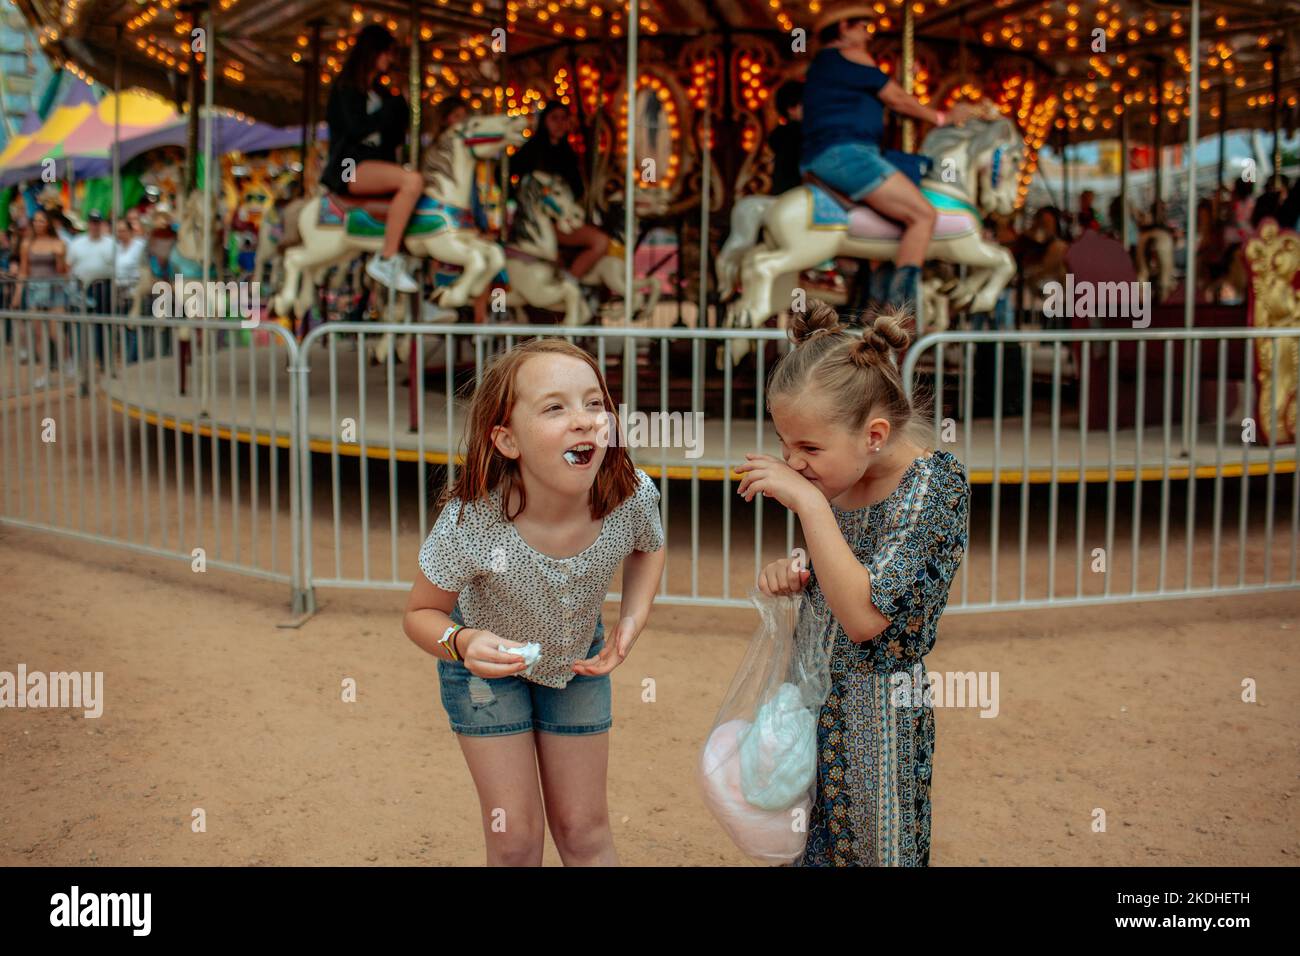 Dingo jeunes filles mangeant des bonbons de coton à un carnaval Banque D'Images